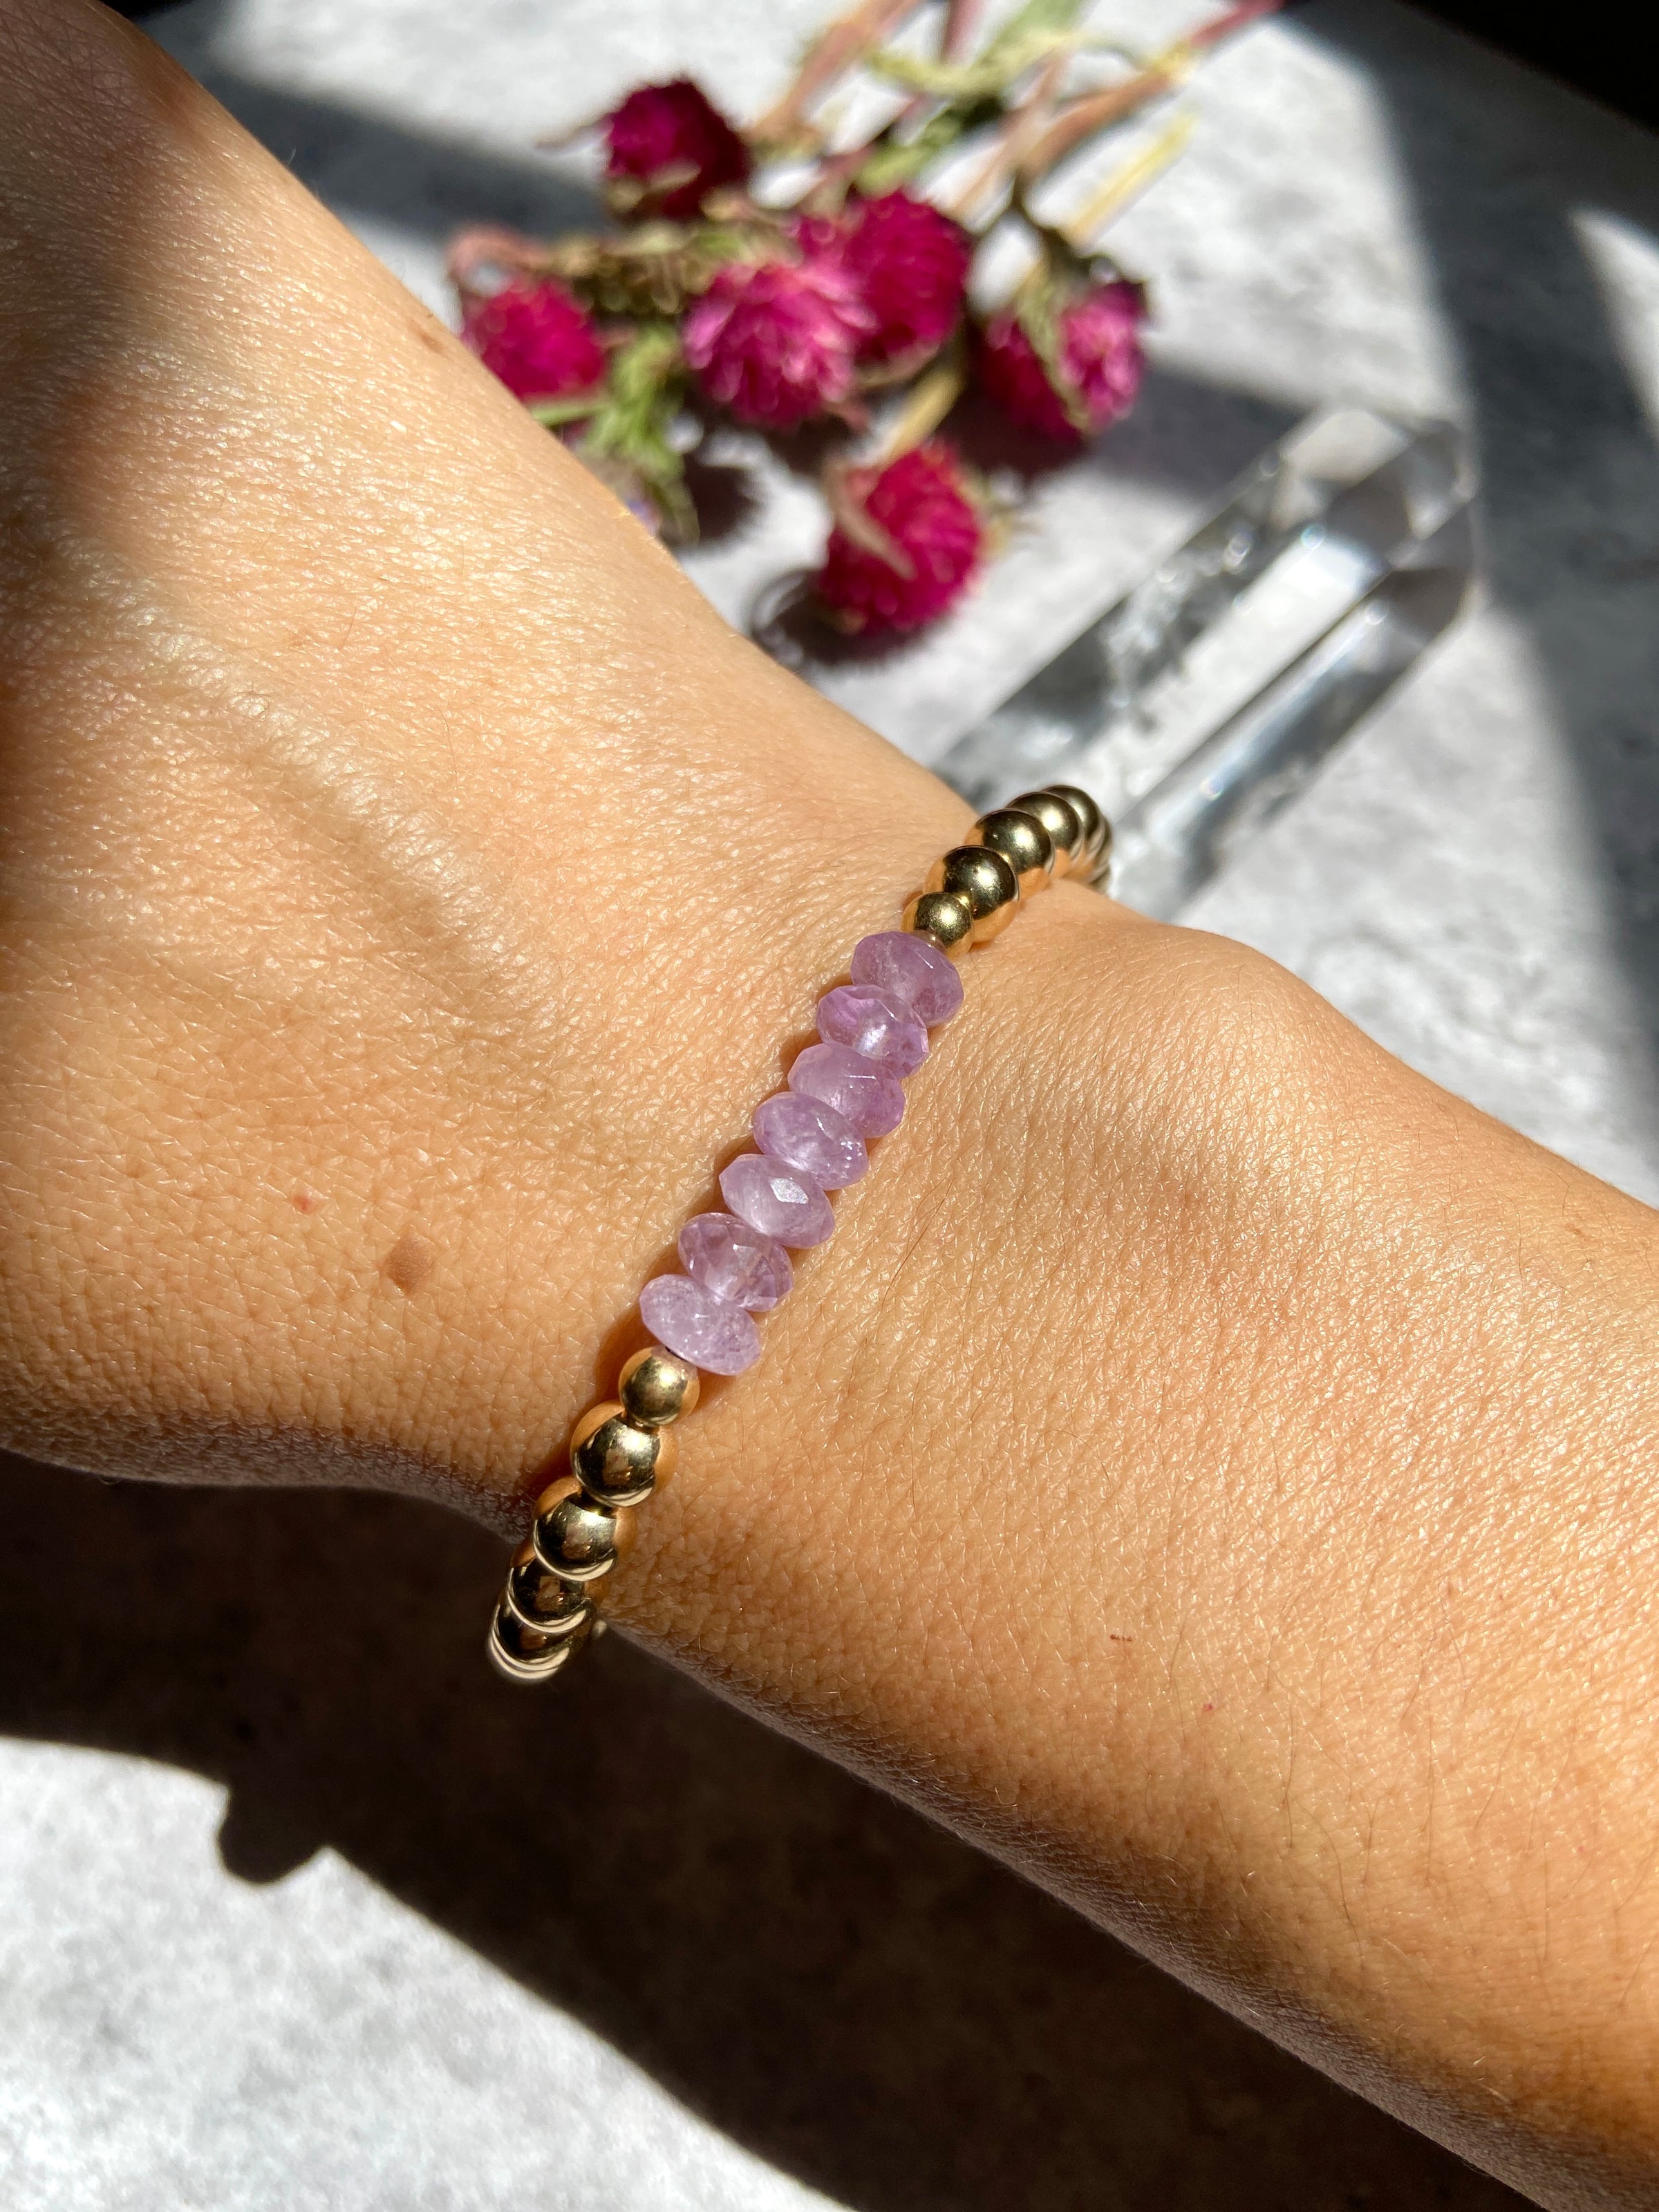 Appealing amethyst beads bracelet